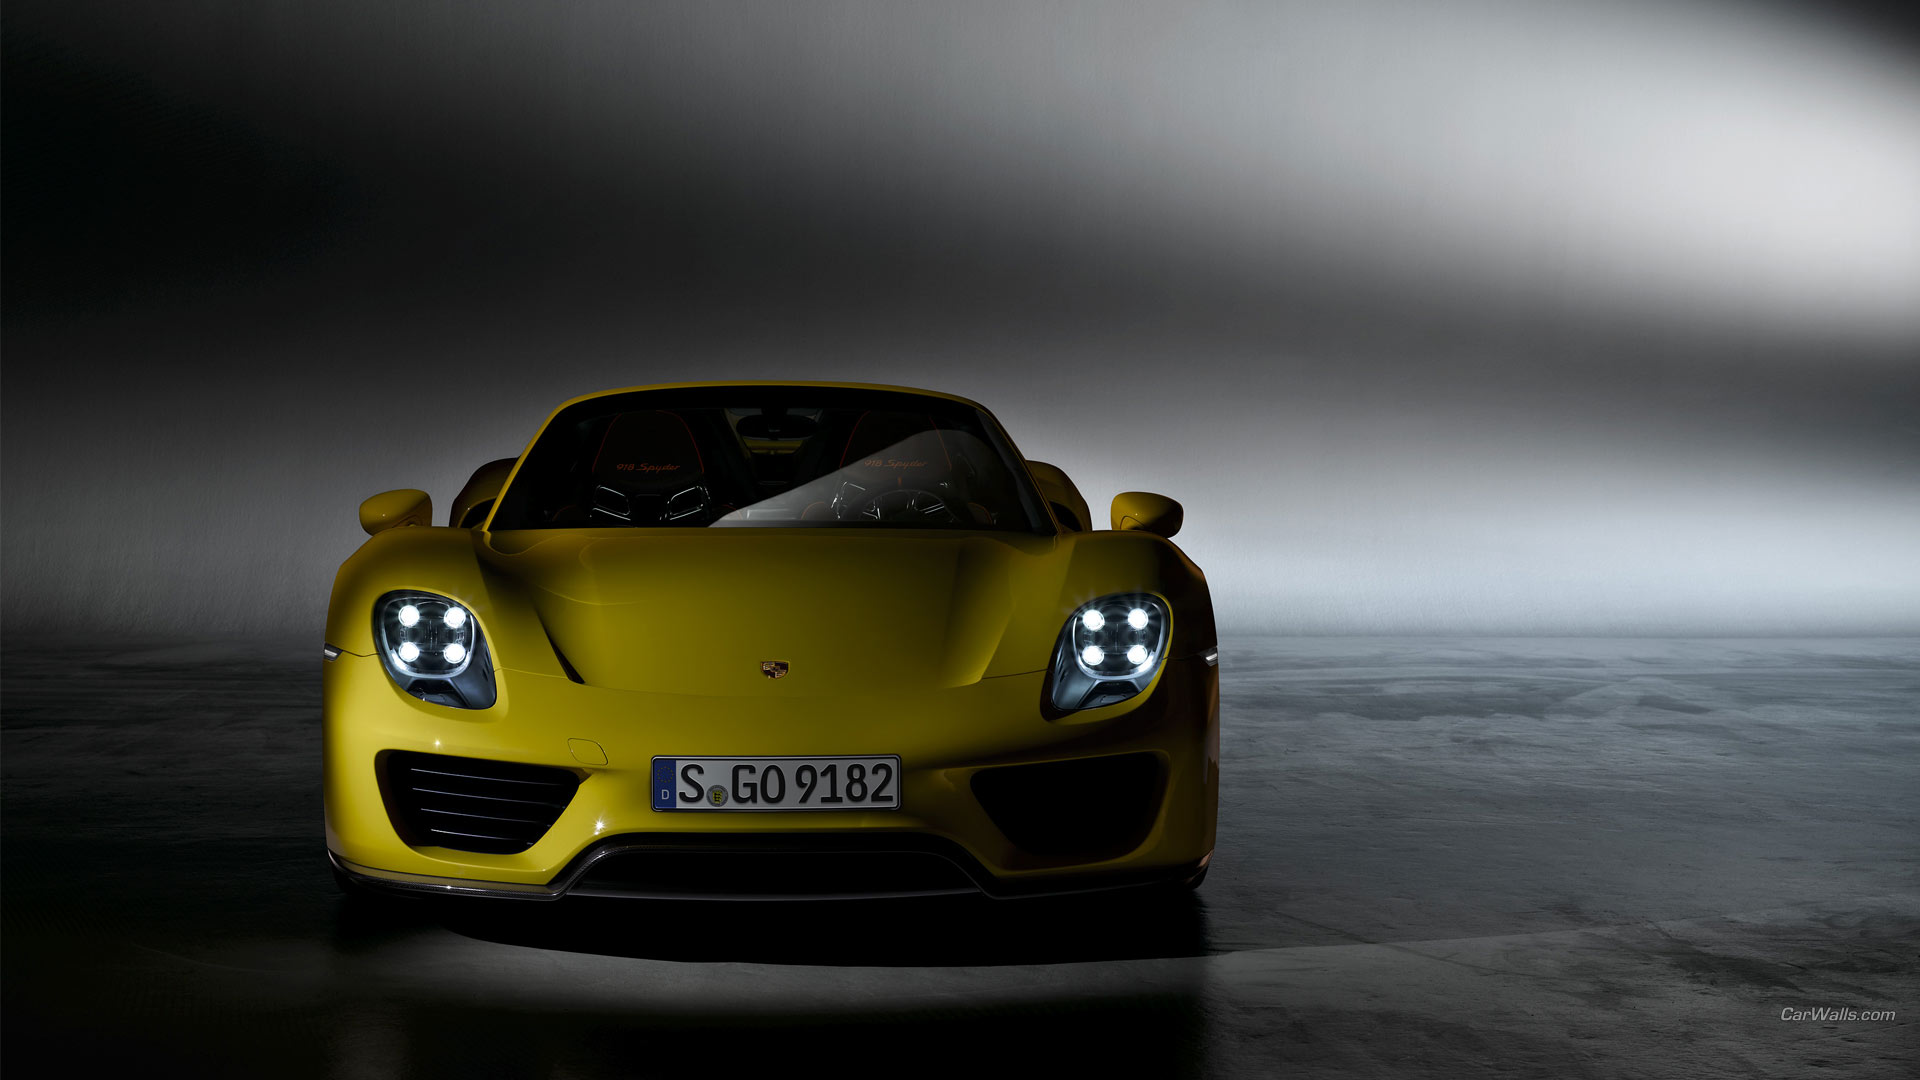  Porsche HQ Background Images